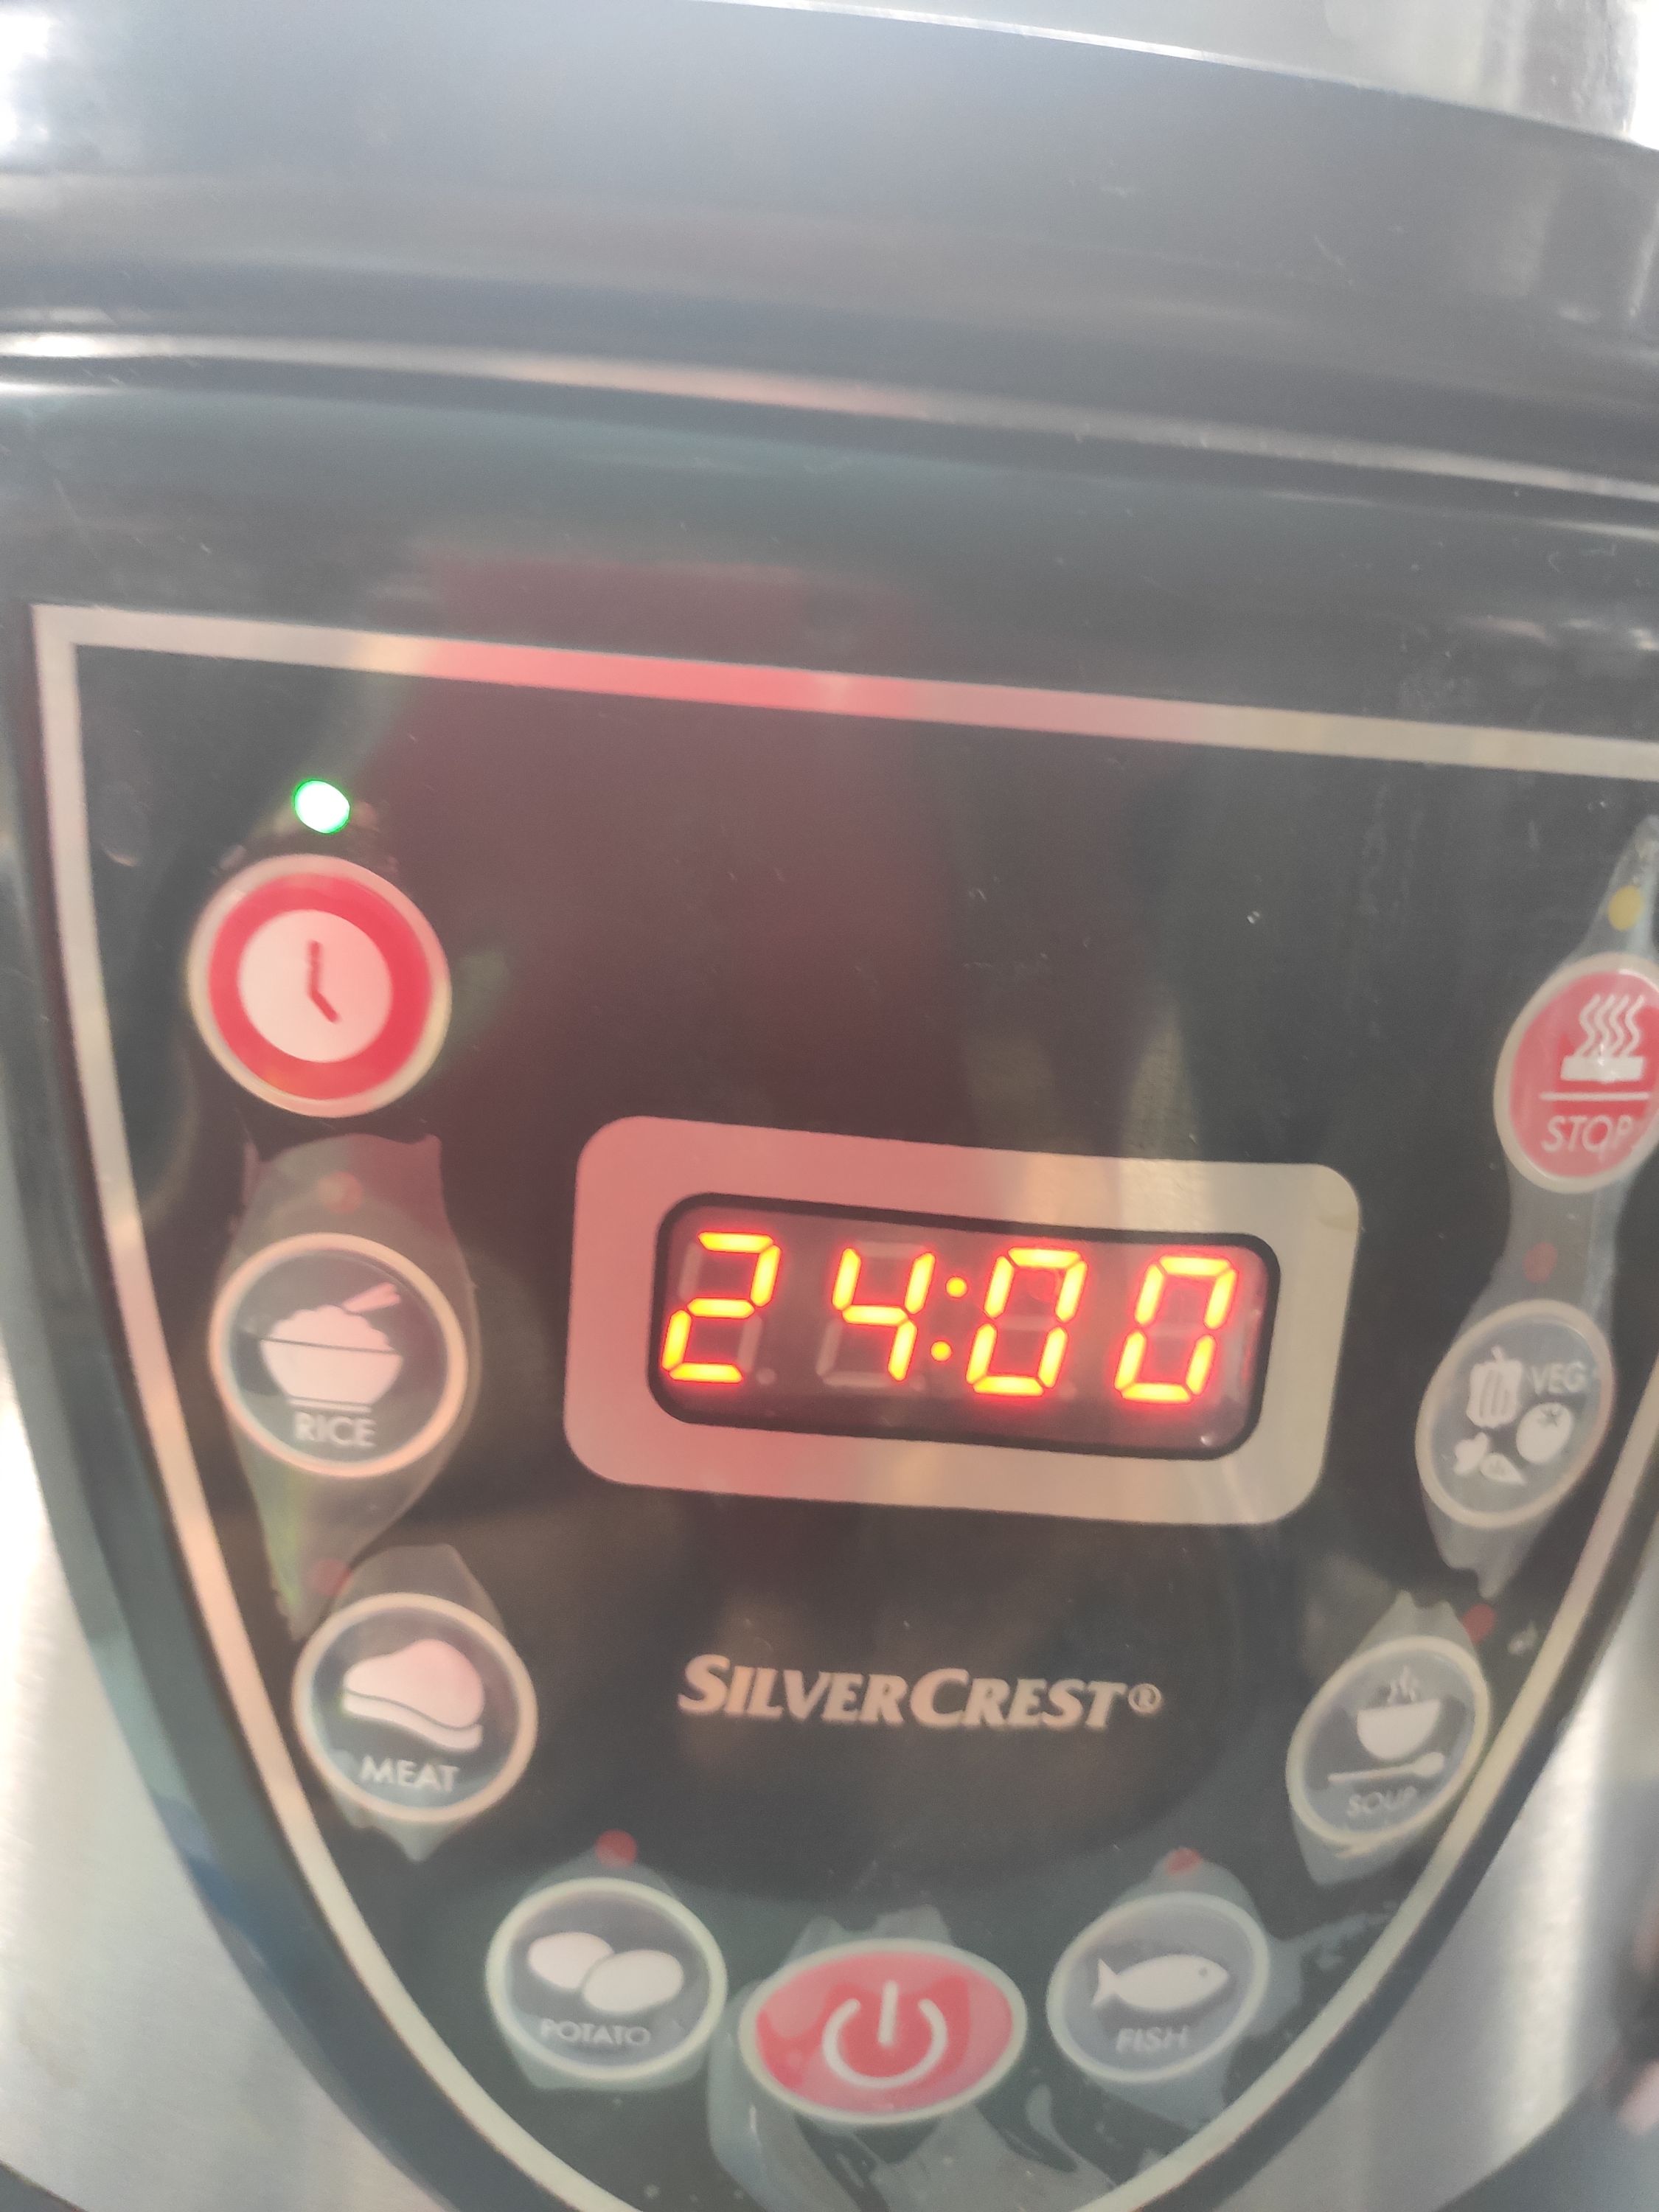 autocuiseur électrique silvercrest sskt 900 avant la prmière